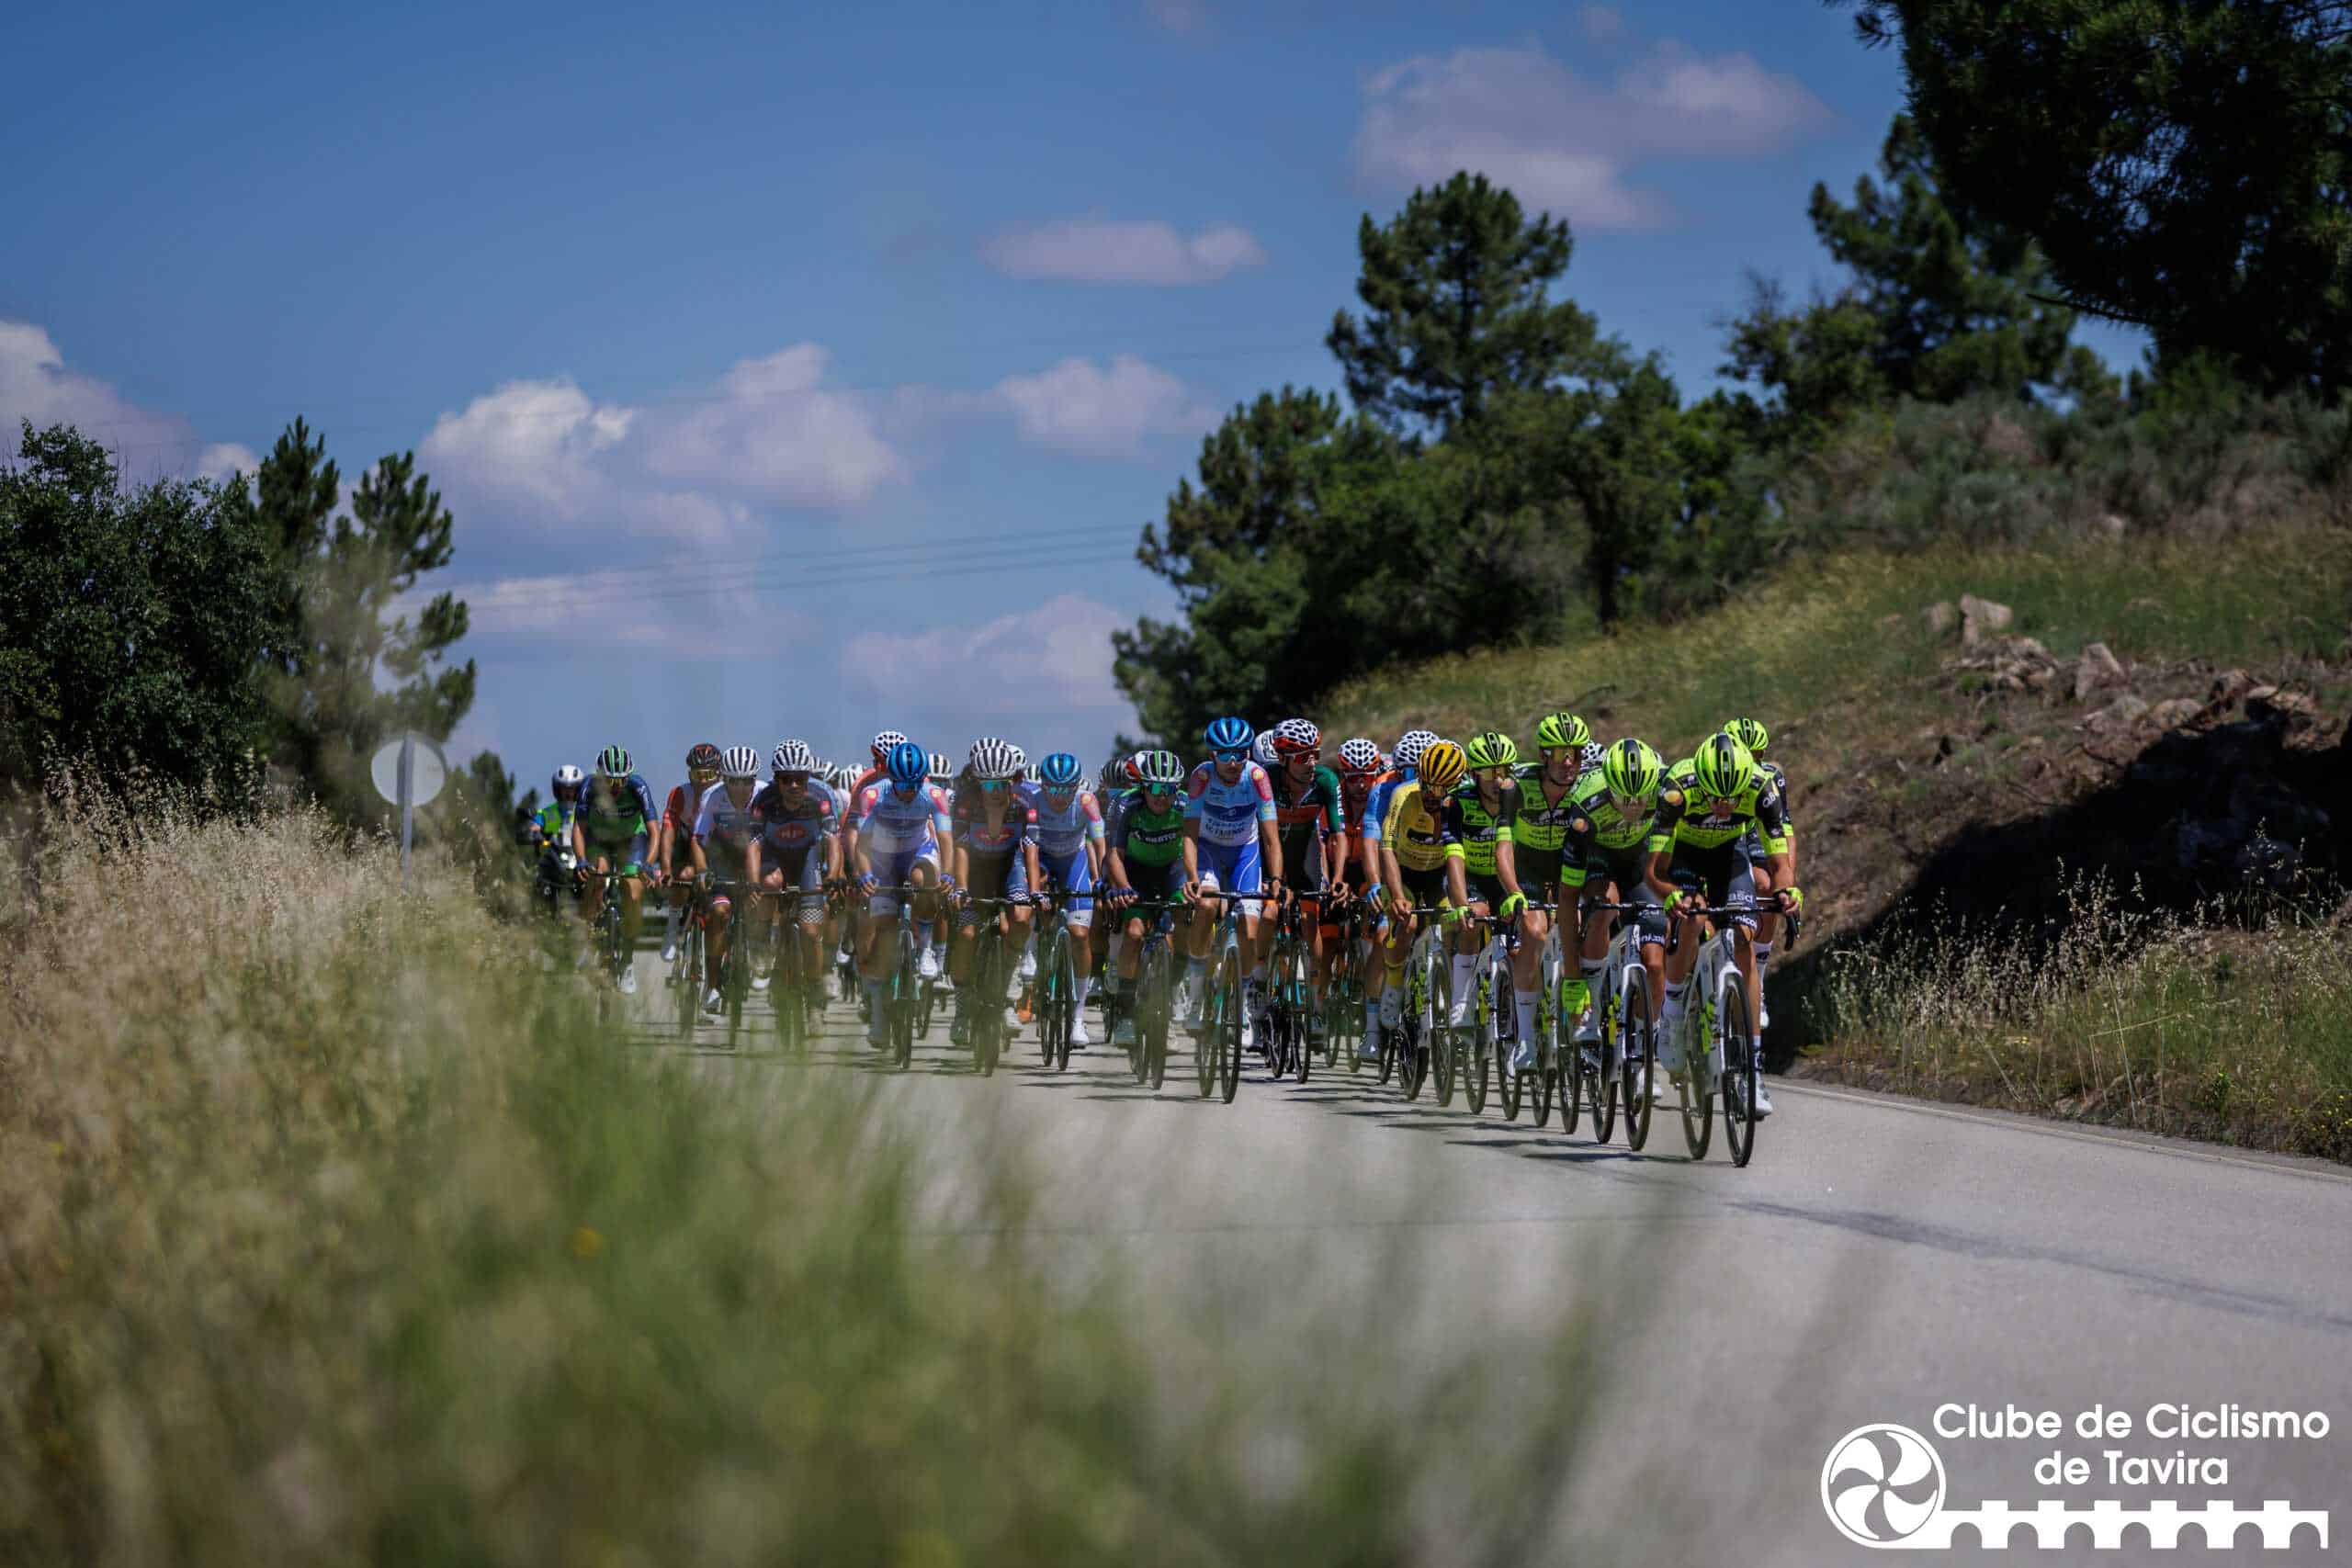 Tabuaço, 15/06/2023 - Decorreu hoje a 2ª etapa do 3º Grande Prémio de Ciclismo do Douro Internacional que percorreu estradas entre Tabuaço e Armamar.

(Miguel Pereira/Global Imagens)